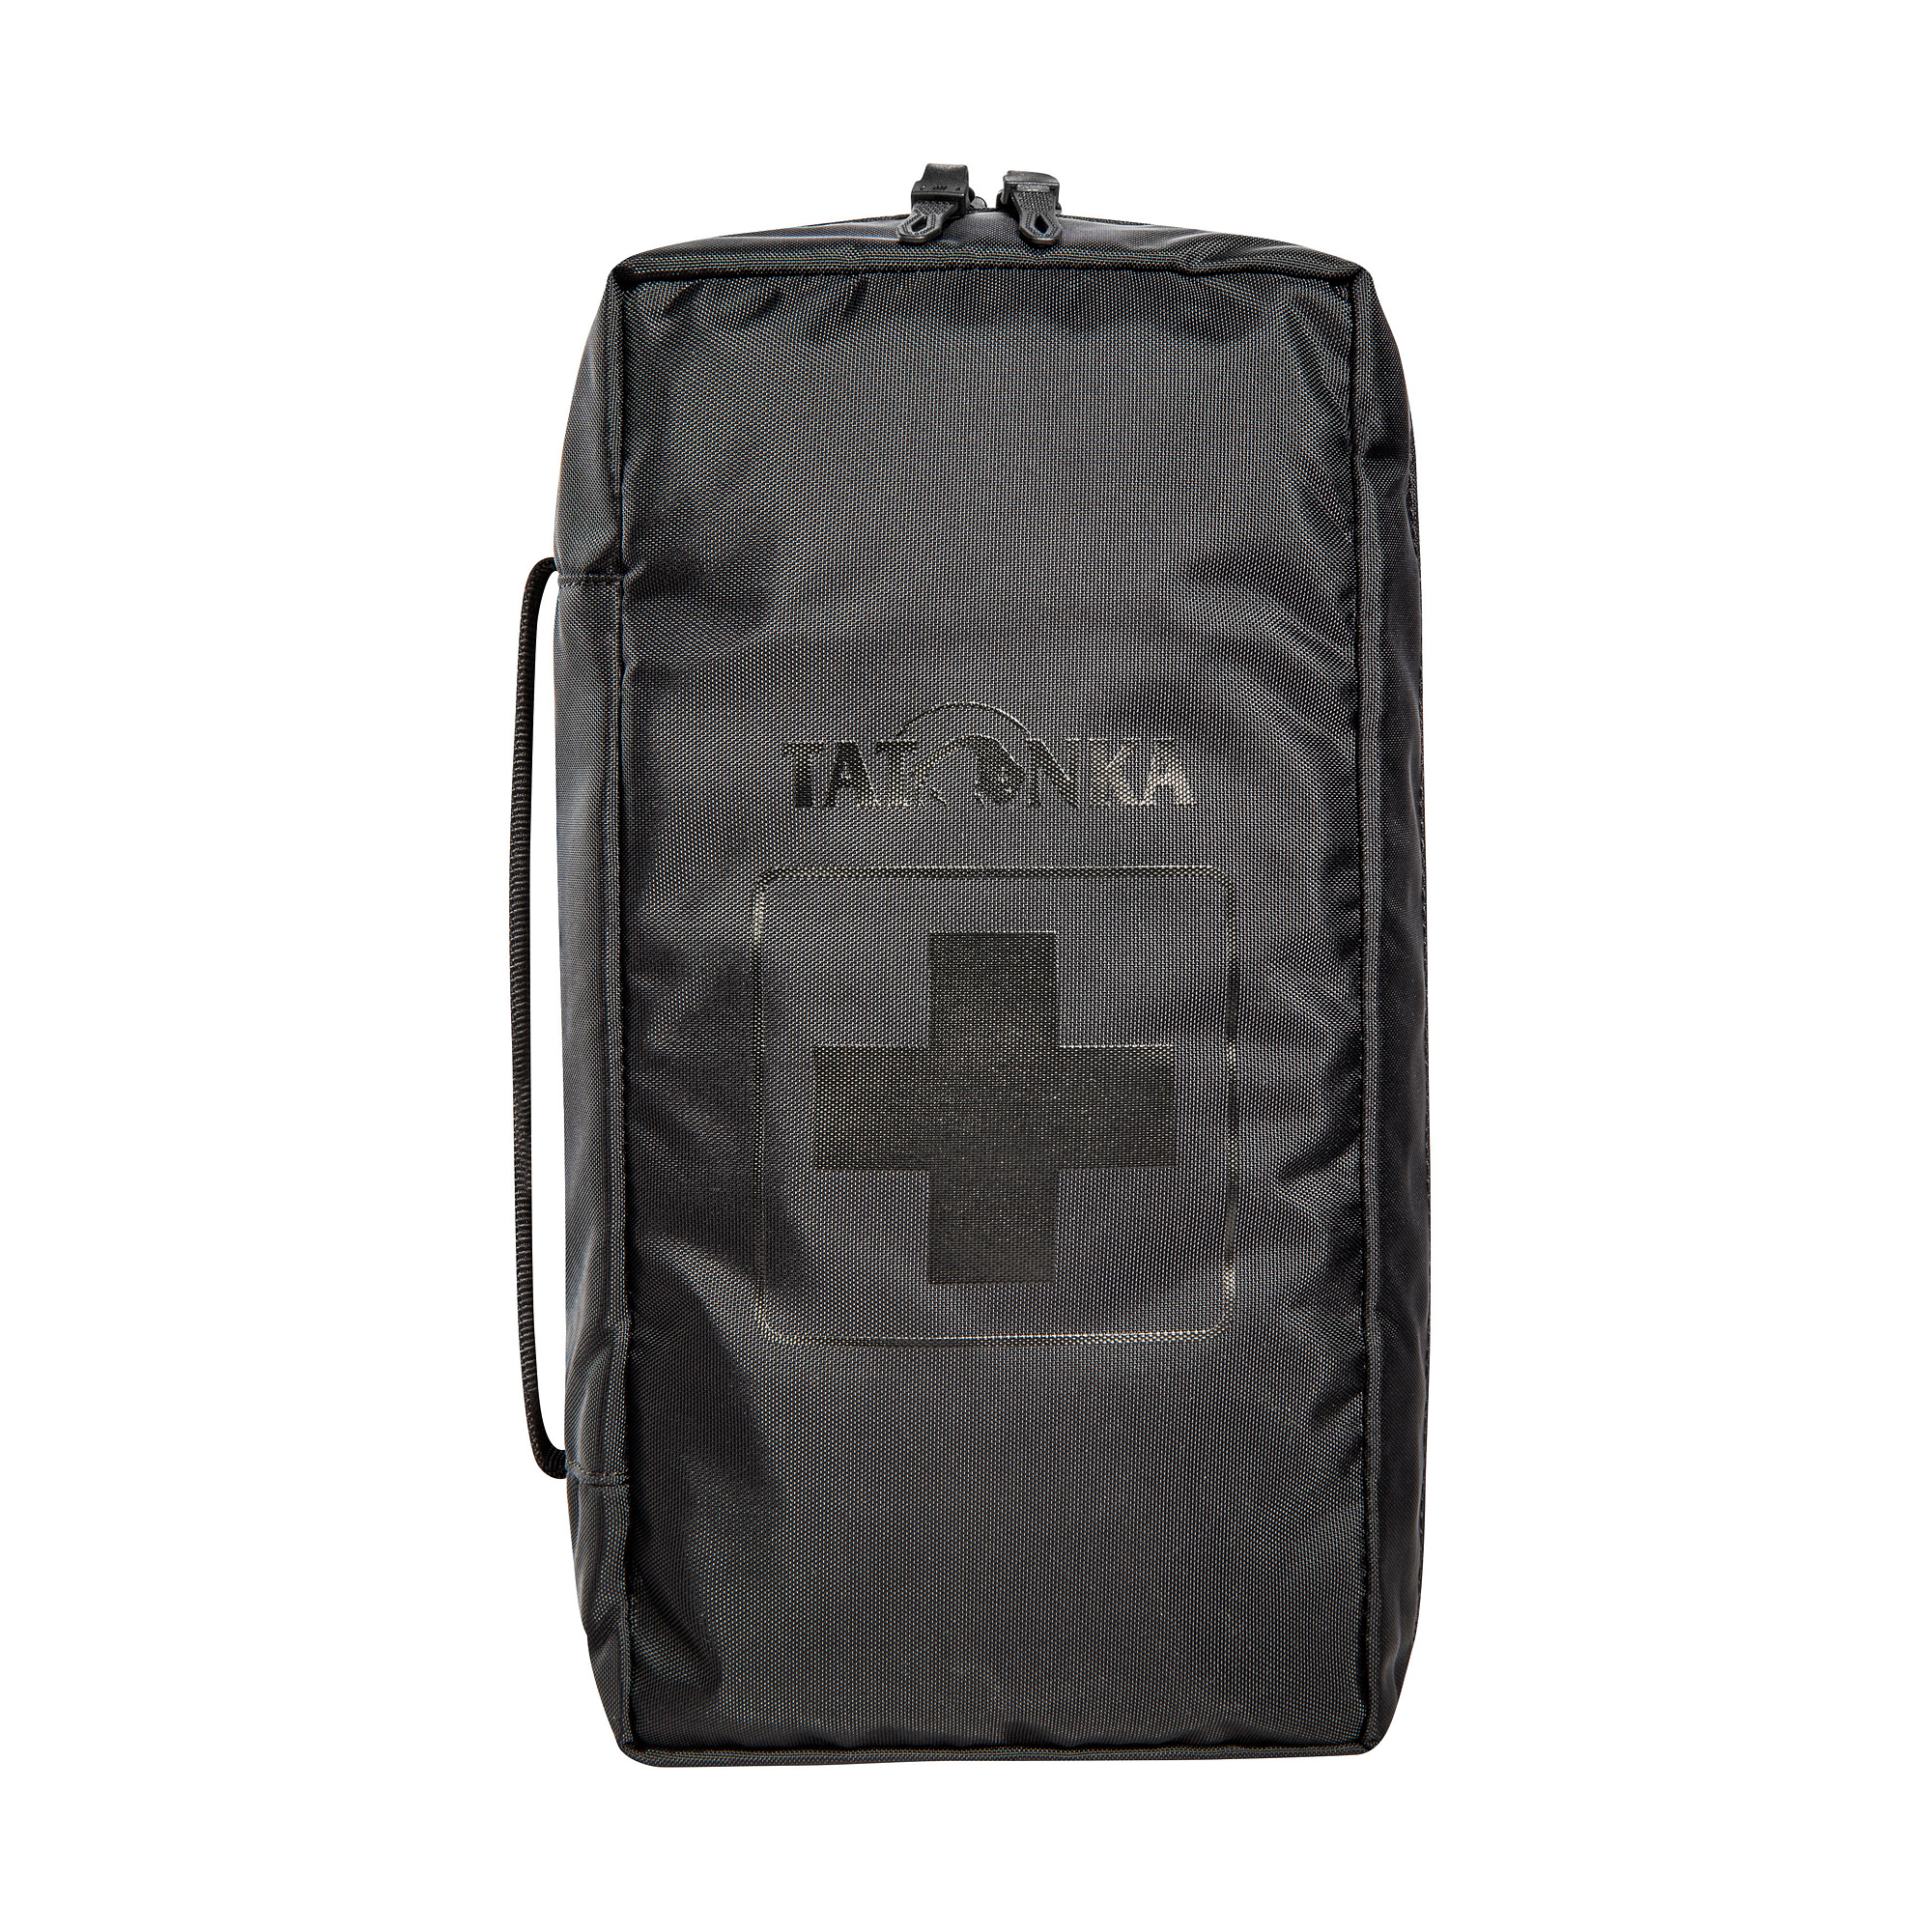 Tatonka First Aid "M" black schwarz Erste-Hilfe-Rucksäcke /-taschen 4013236335866